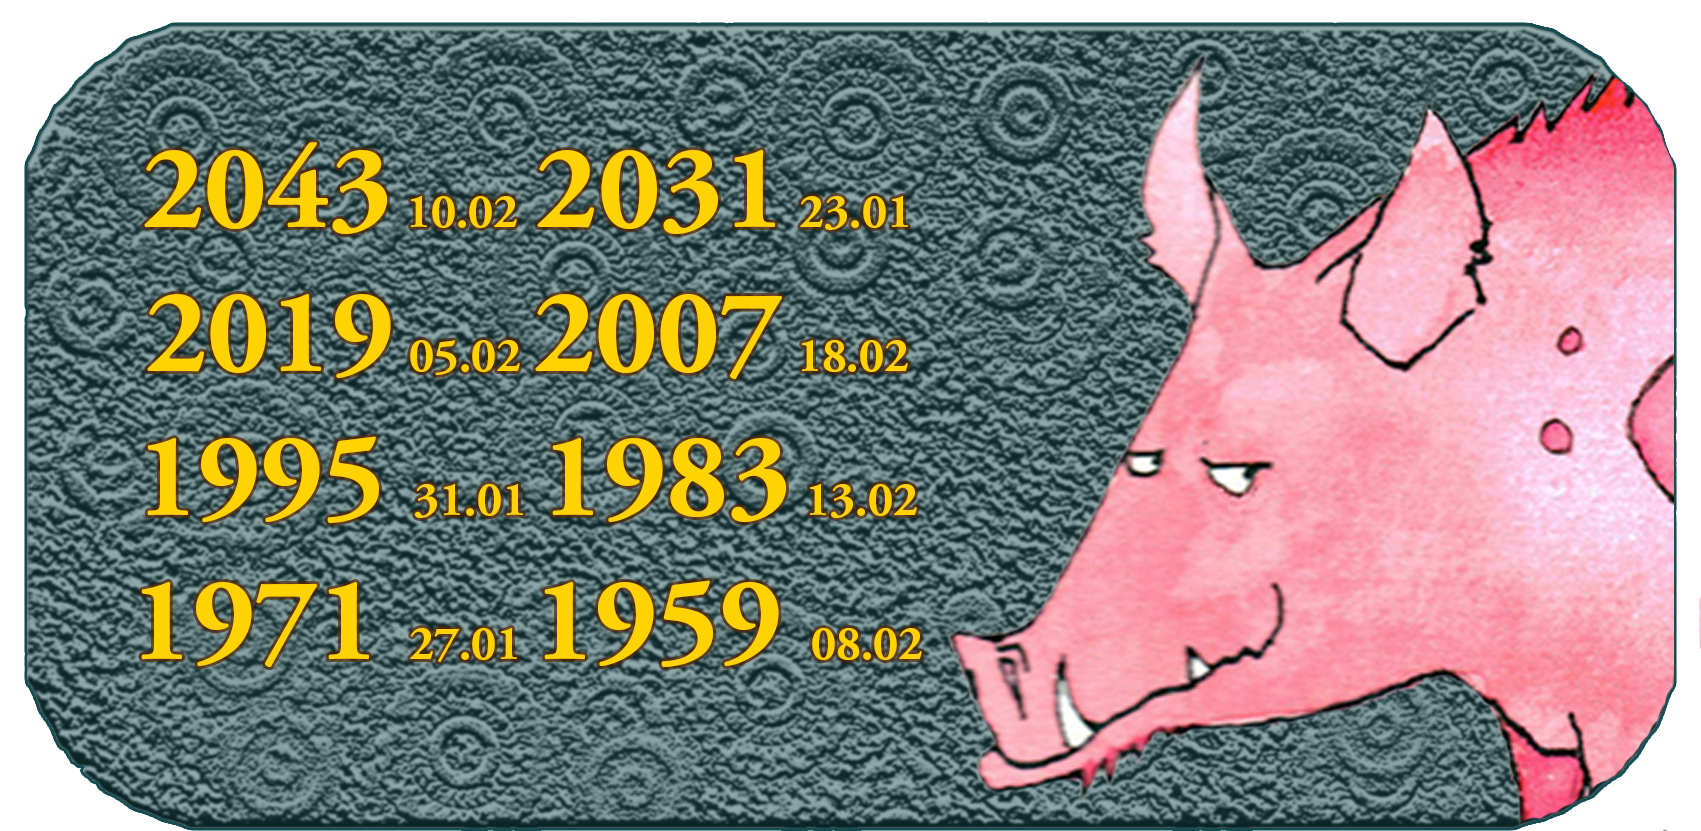 Año animal del zodiaco chino | Los doce animales chinos | Animal n.° 12 Cerdo